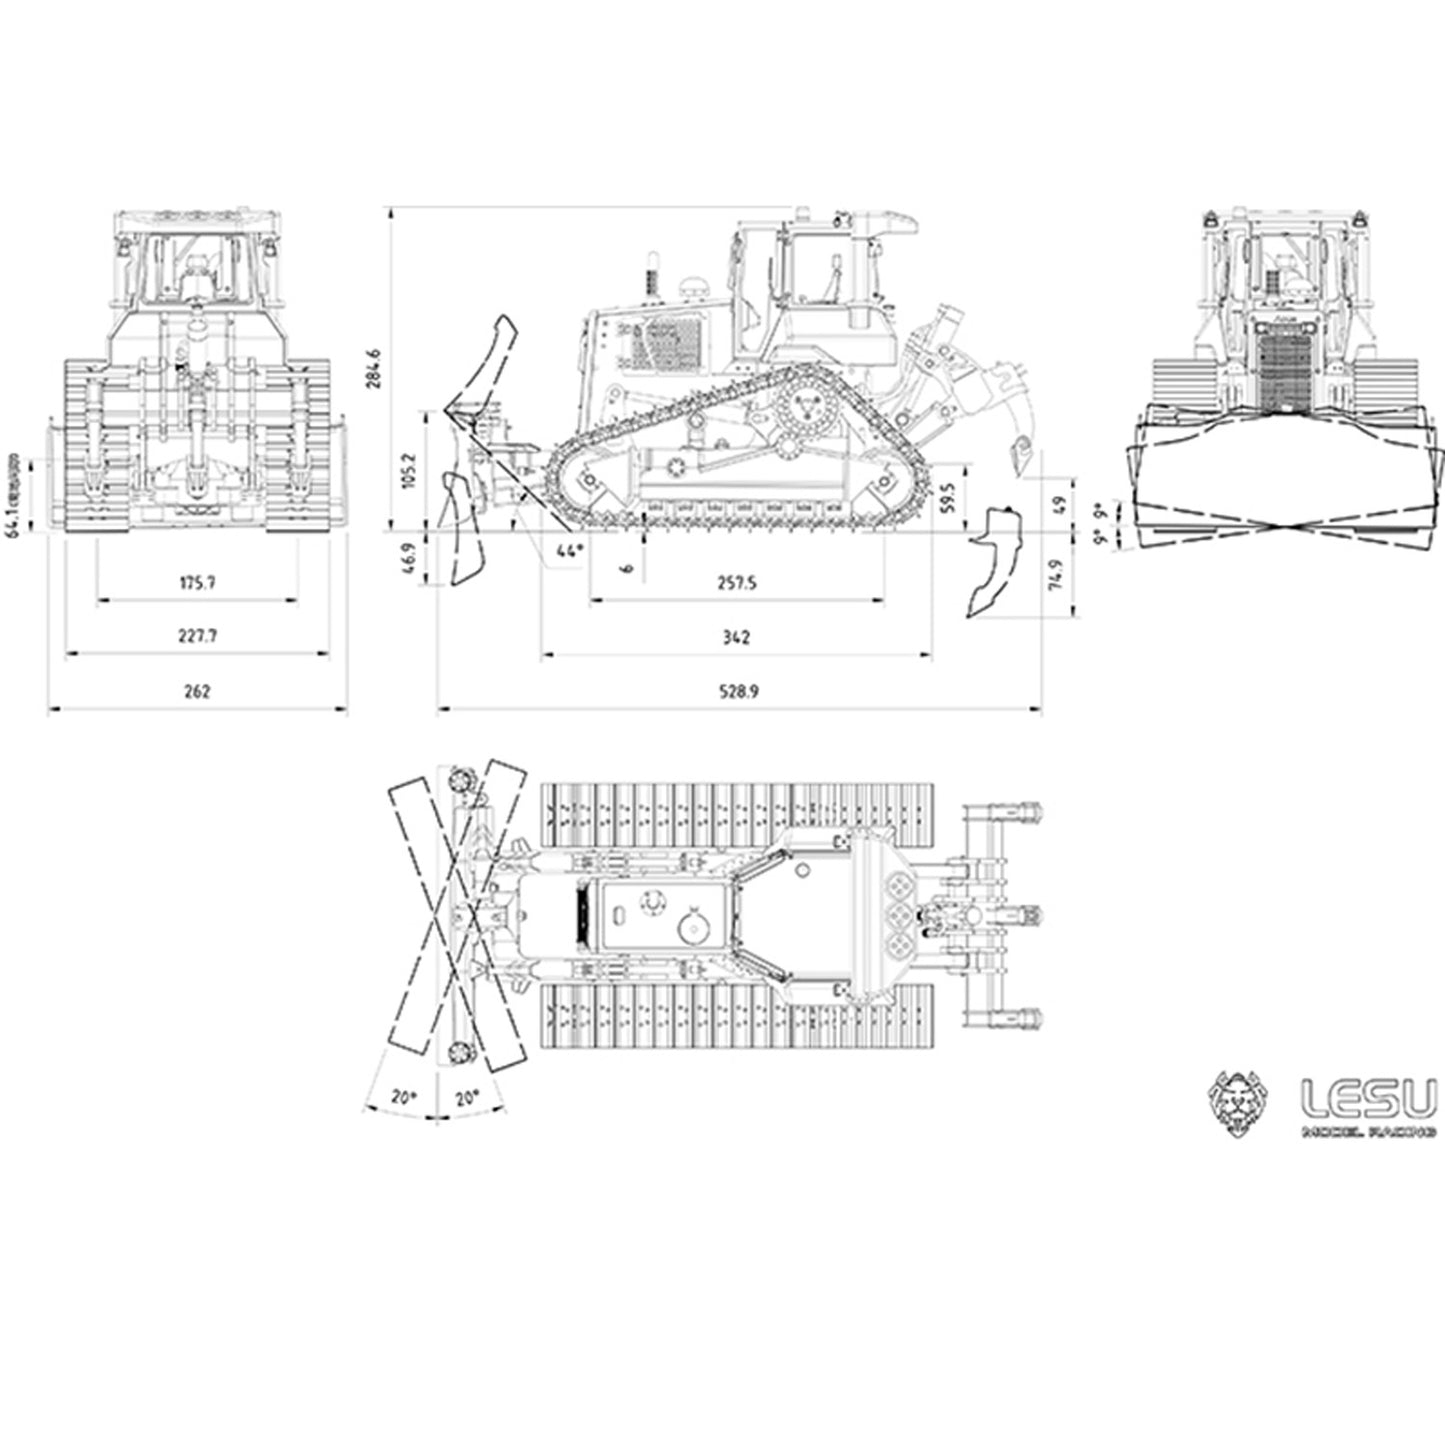 LESU 1/14 Aoue DT60 Metal RC RTR Hydraulic Bulldozer Dozer B0004